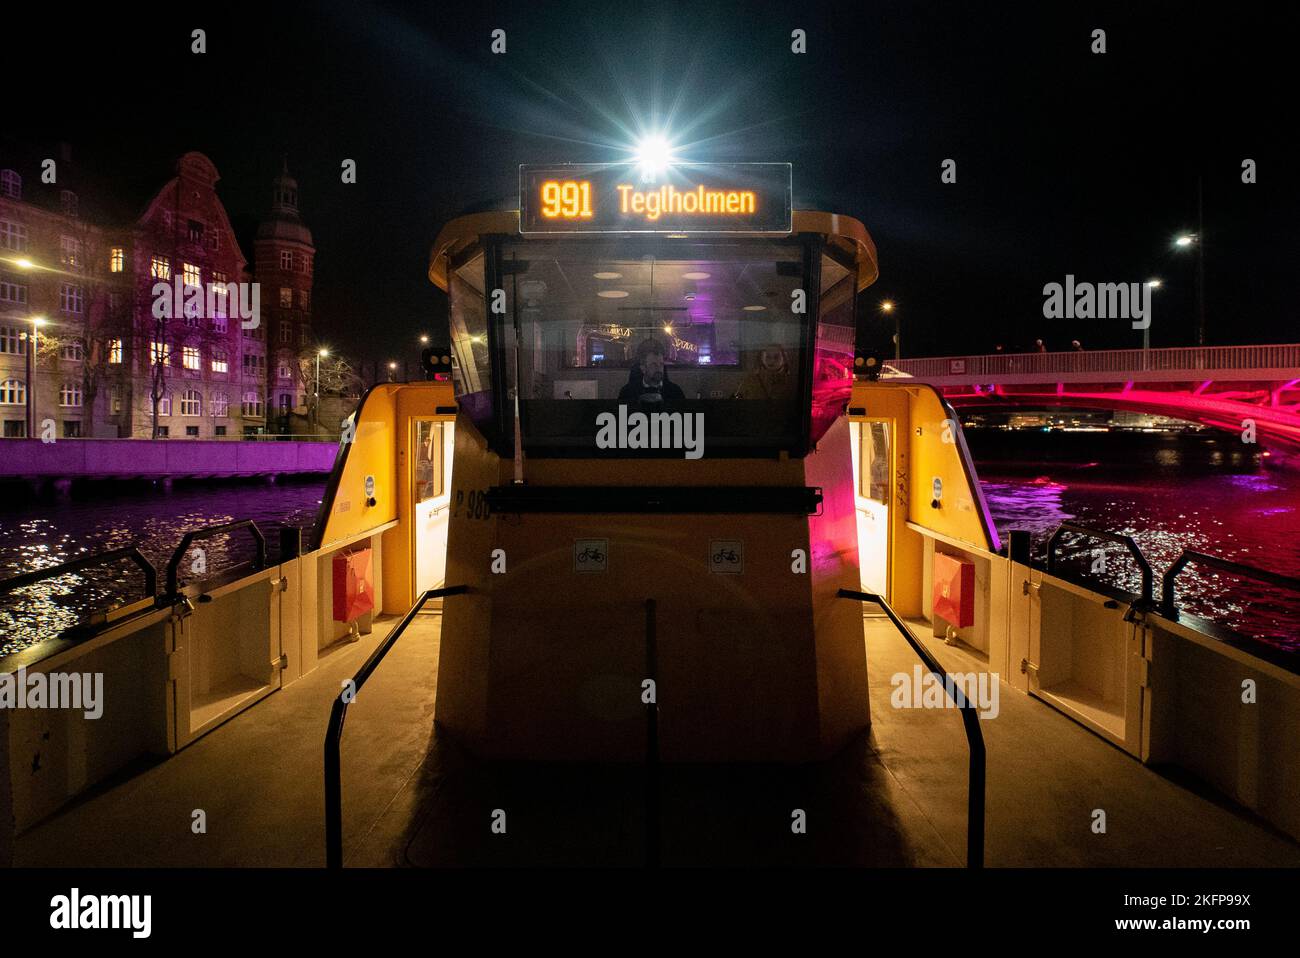 An Bord des Kopenhagener Hafenbusses bei Nacht (Københavns Havnebusser om natten) (Rute 991 Teglholmen) Stockfoto